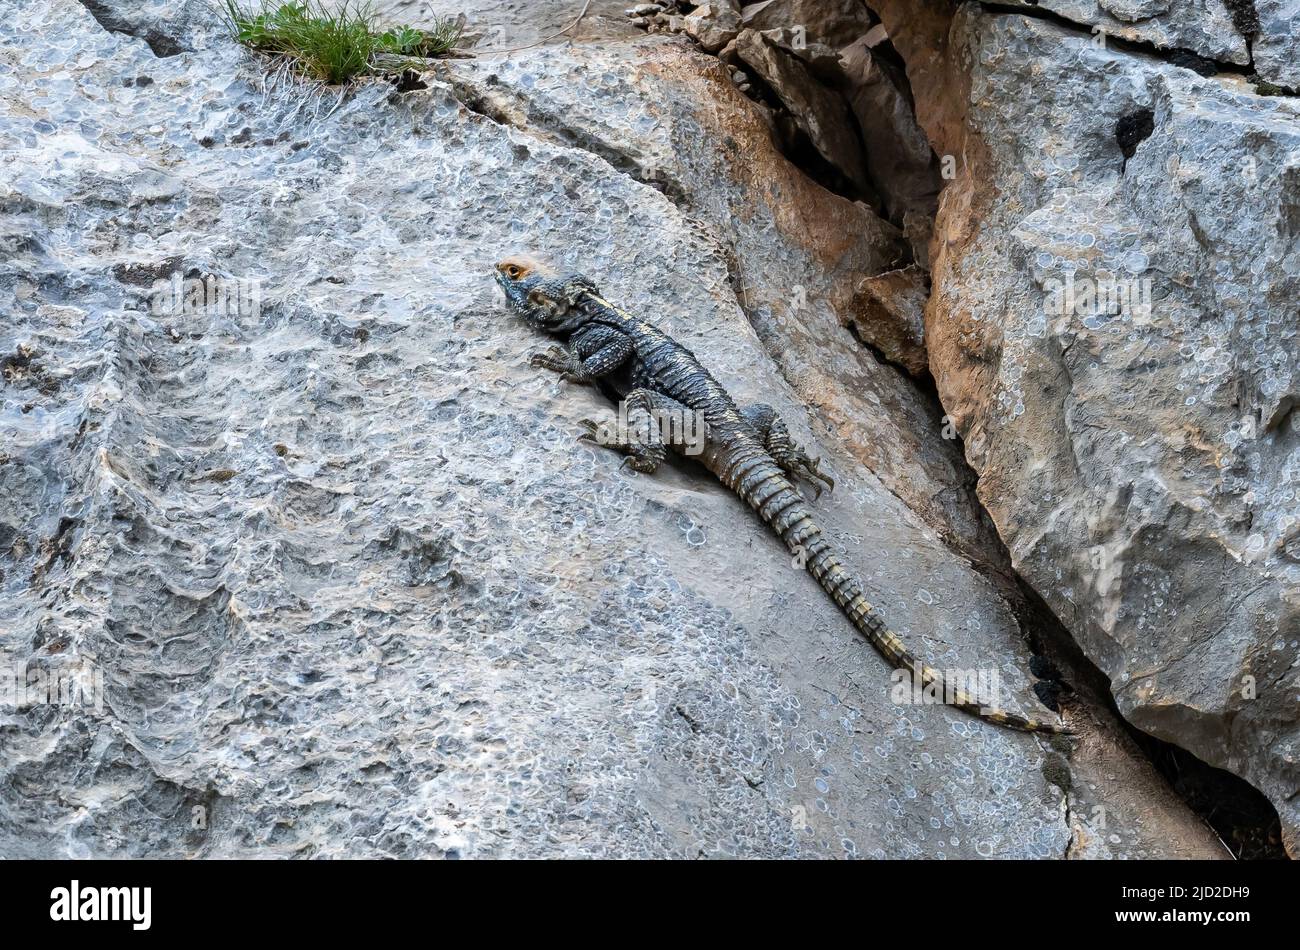 Ein Roughtail Rock Agama (Stellagama stellio), der auf einem Felsen sonnen soll. Aladaglar Nationalpark, Niğde, Türkiye. Stockfoto